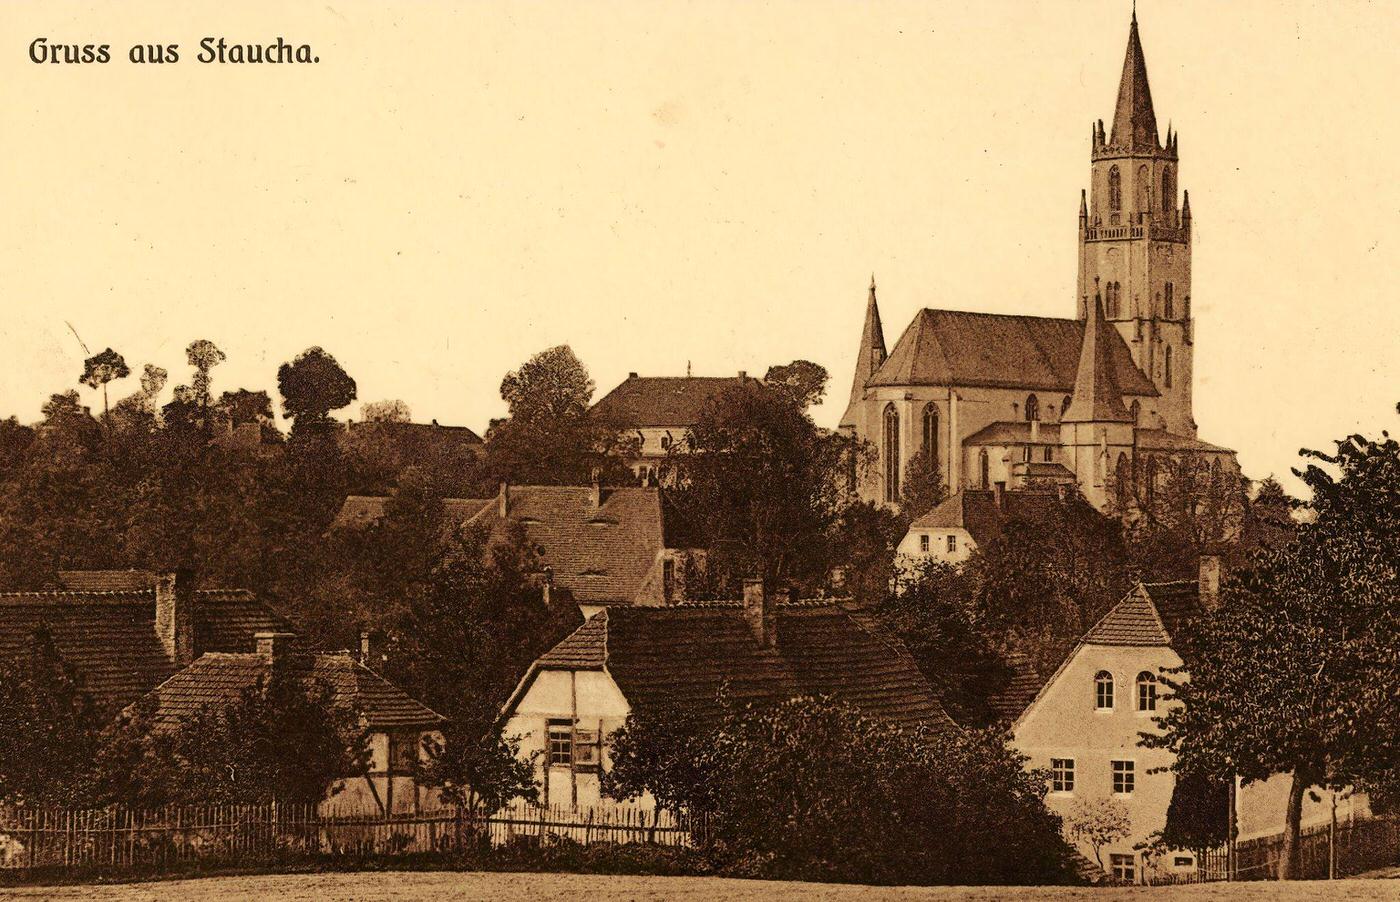 Churches in Landkreis Meissen, Stauchitz, Germany, 1903.